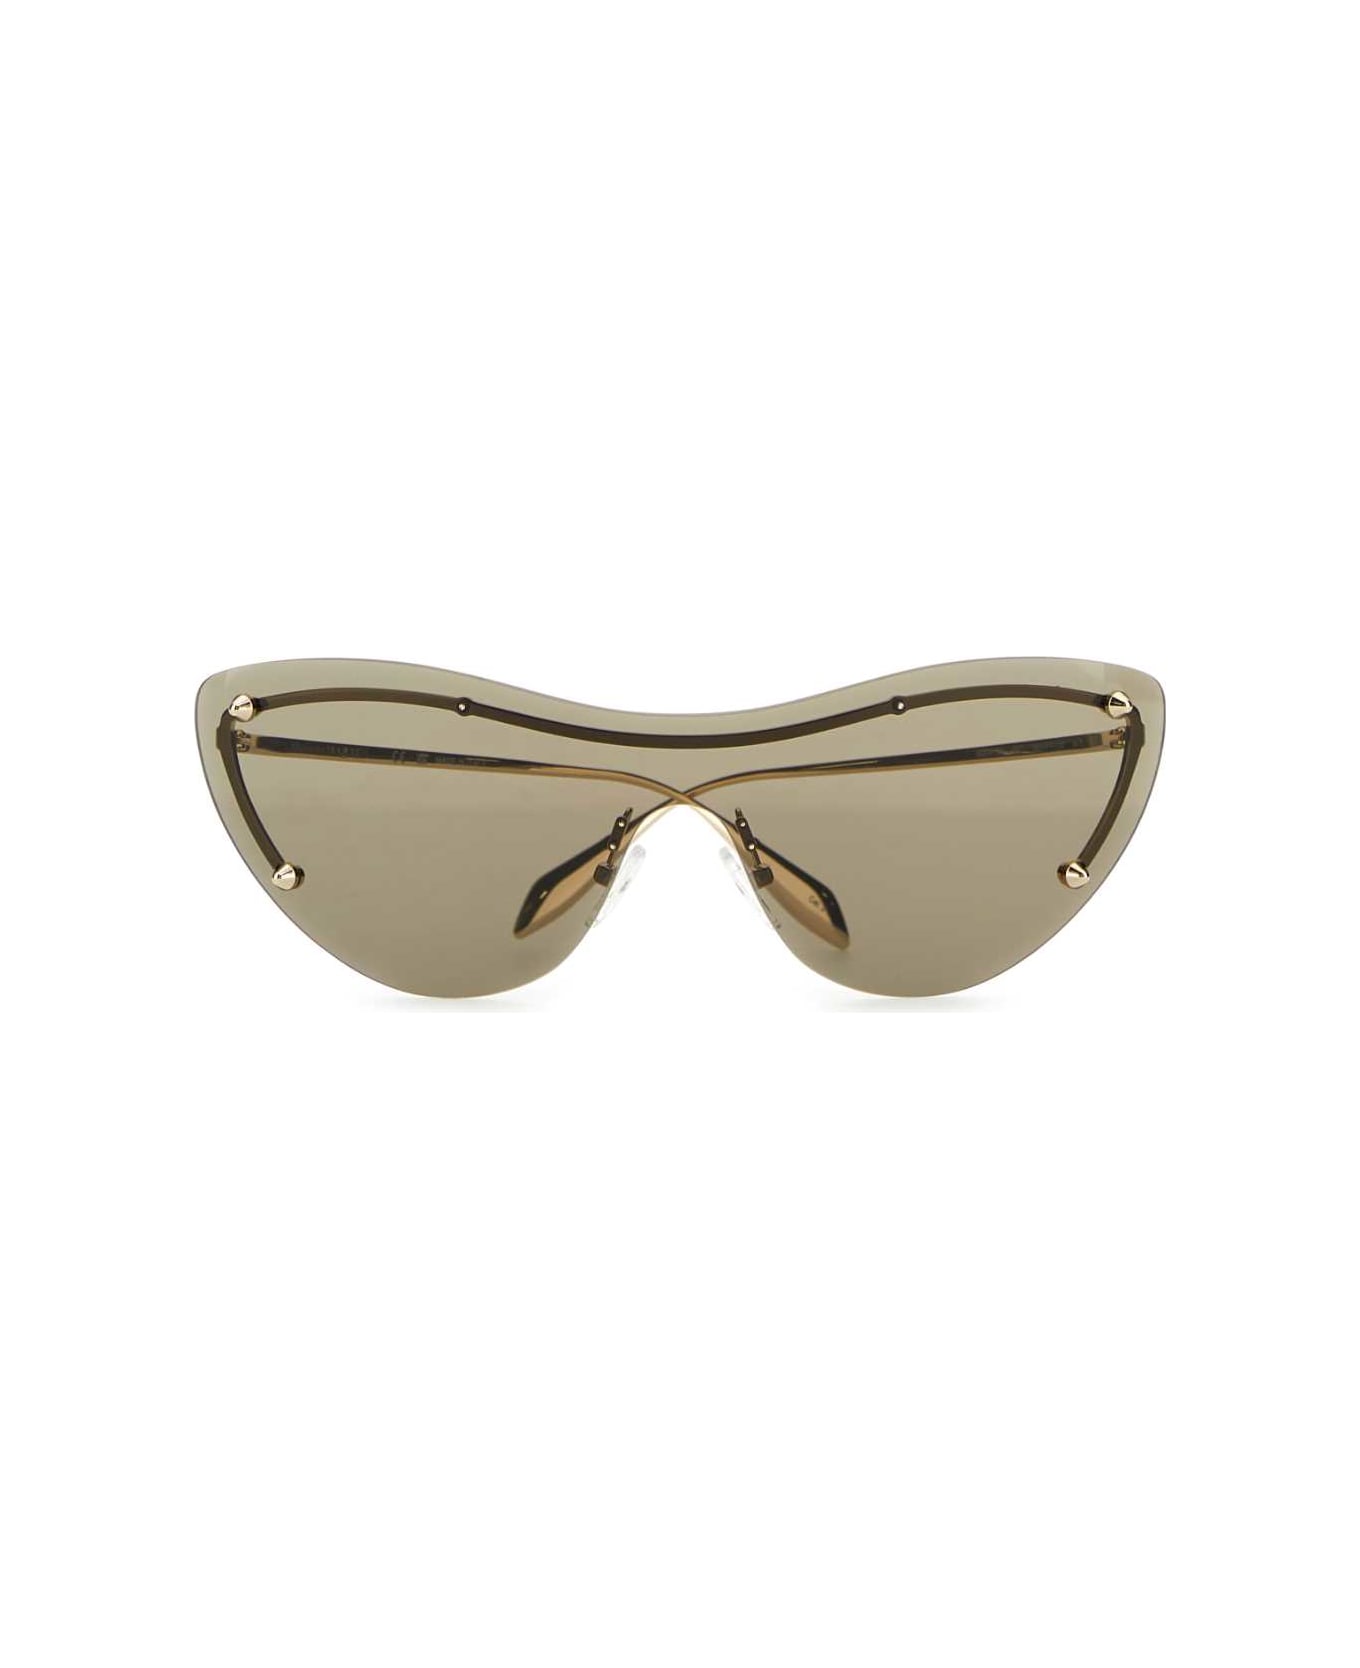 Alexander McQueen Gold Metal Spike Studs Sunglasses - GOLD-GOLD-BROWN